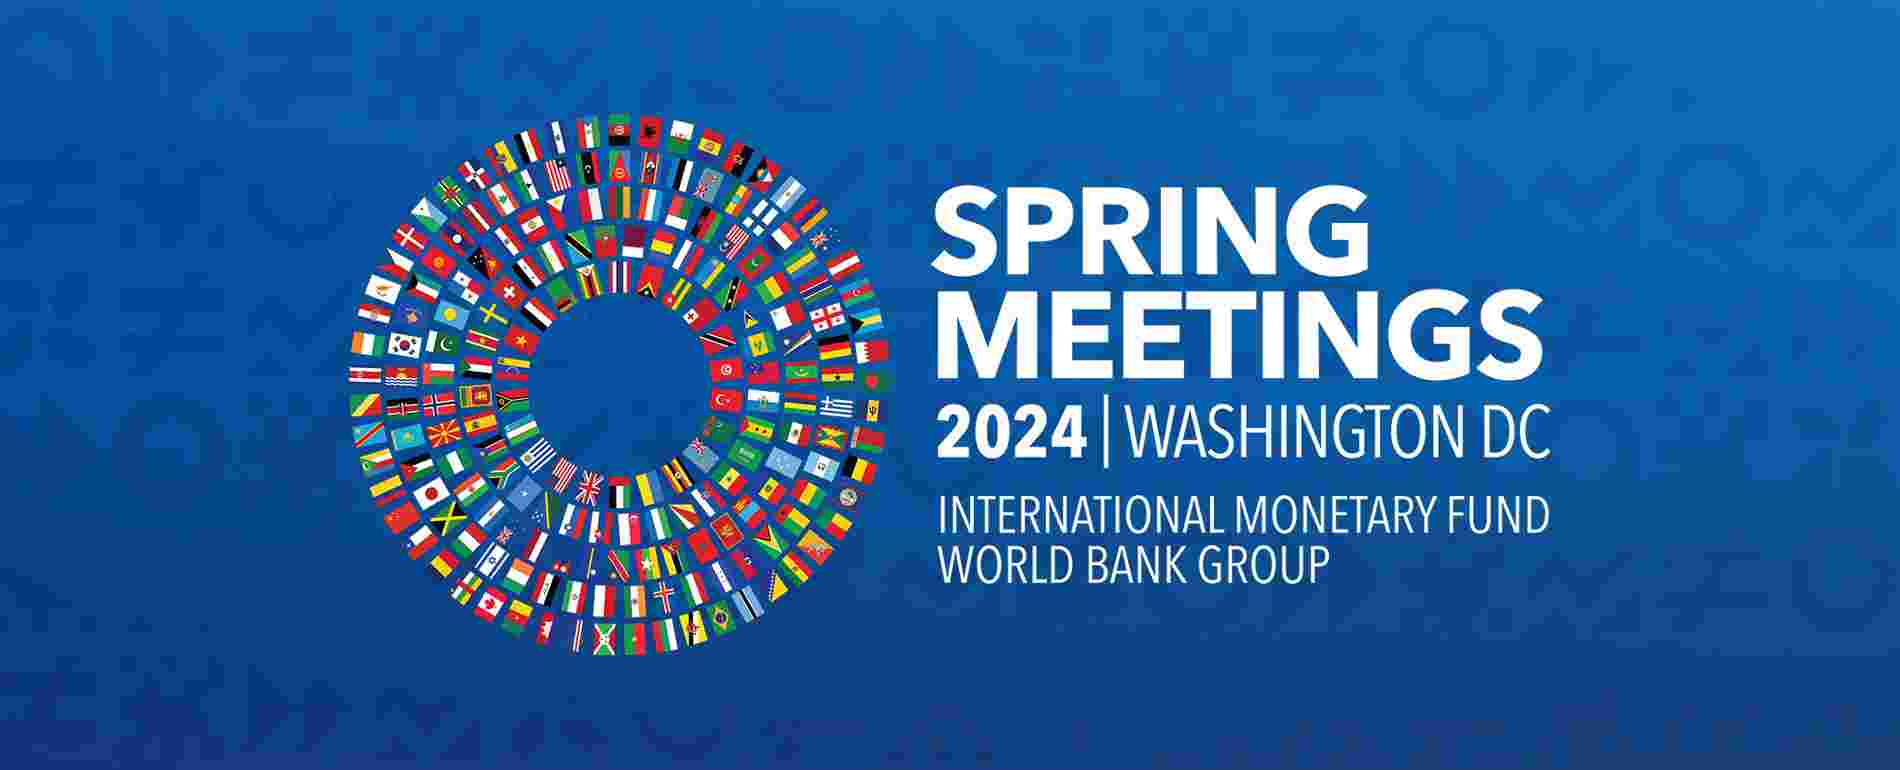 ნათია თურნავა საერთაშორისო სავალუტო ფონდისა და მსოფლიო ბანკის საგაზაფხულო შეხვედრებში მიიღებს მონაწილეობას